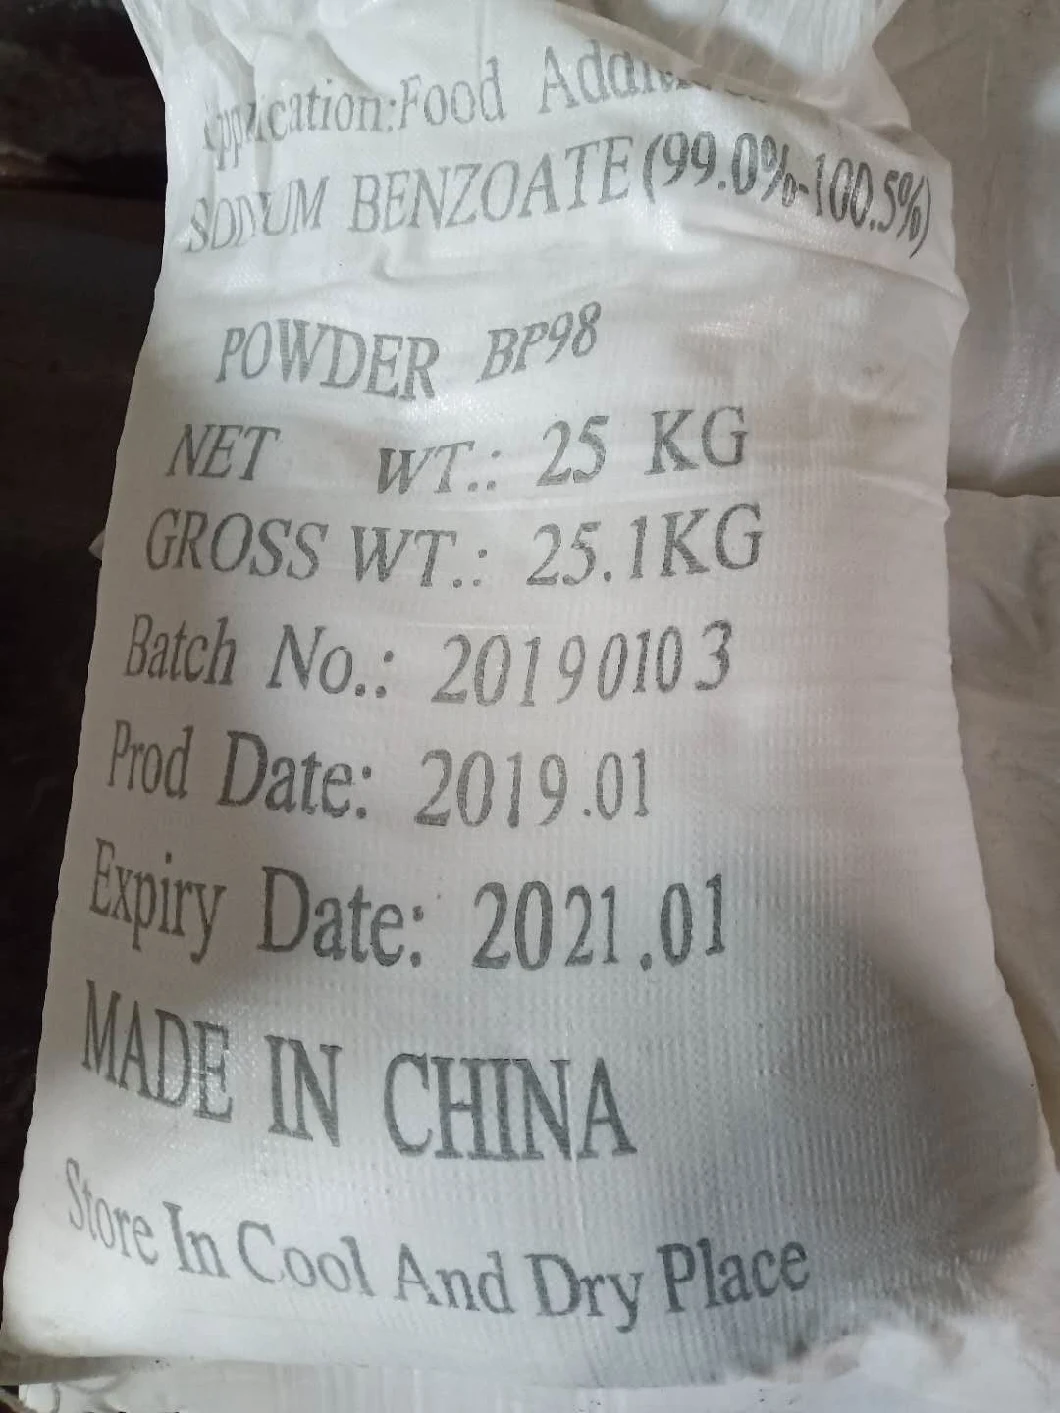 Powder E211 Benzoic Acid Sodium Salt China Sodium Benzoate Salt